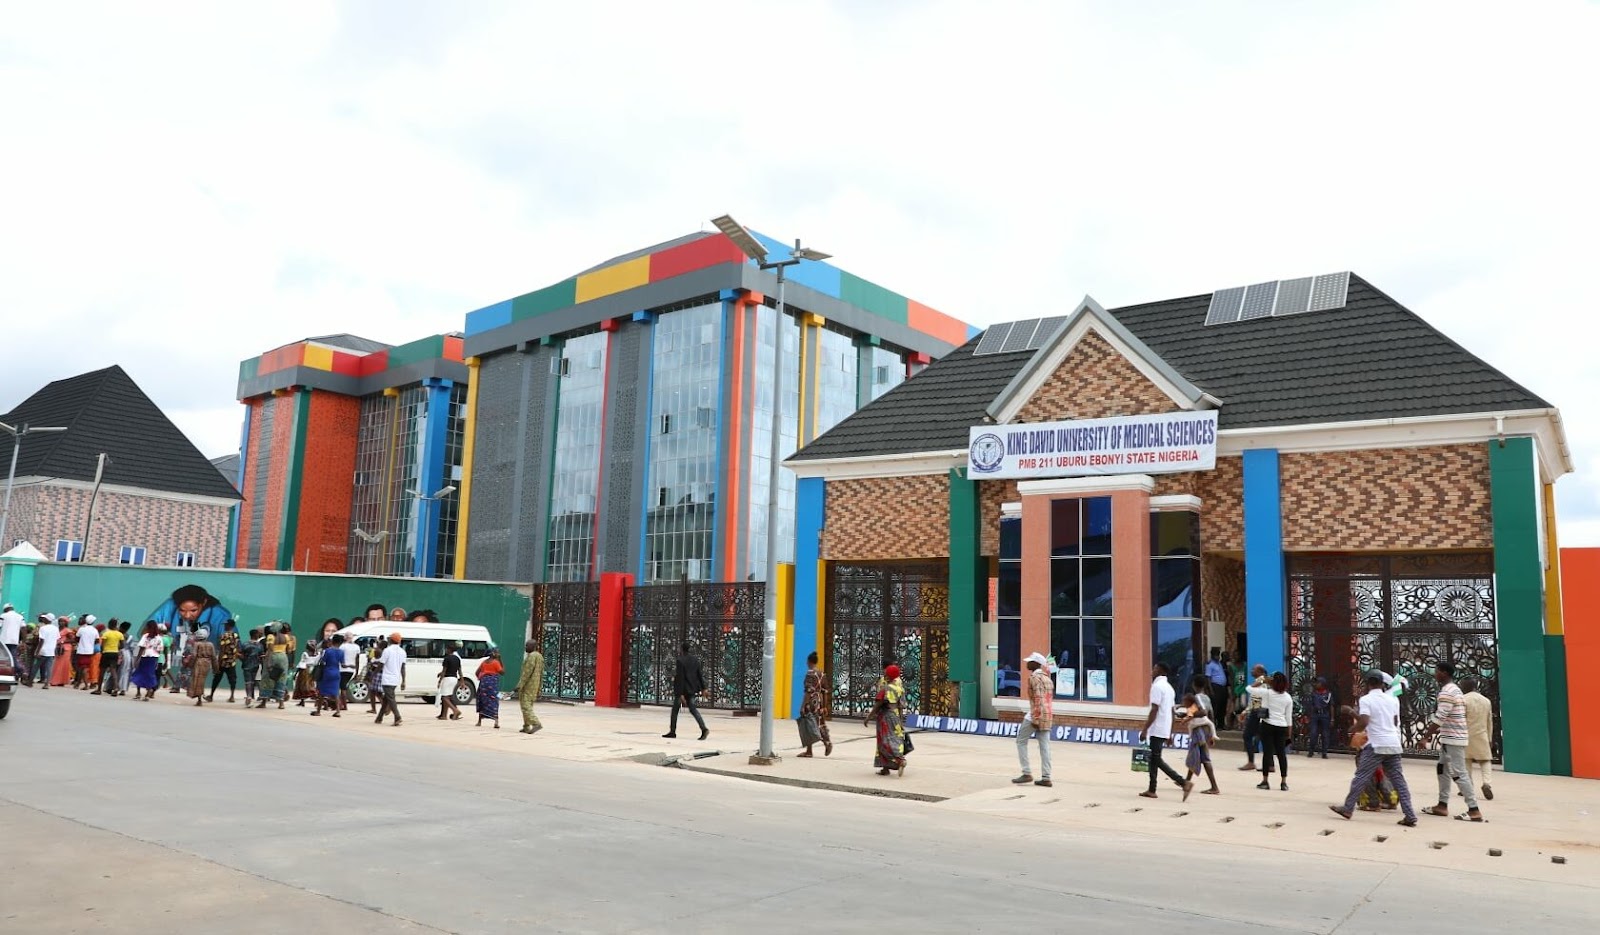 David Umahi Federal University of Health Sciences (DUFUHS) in Uburu”